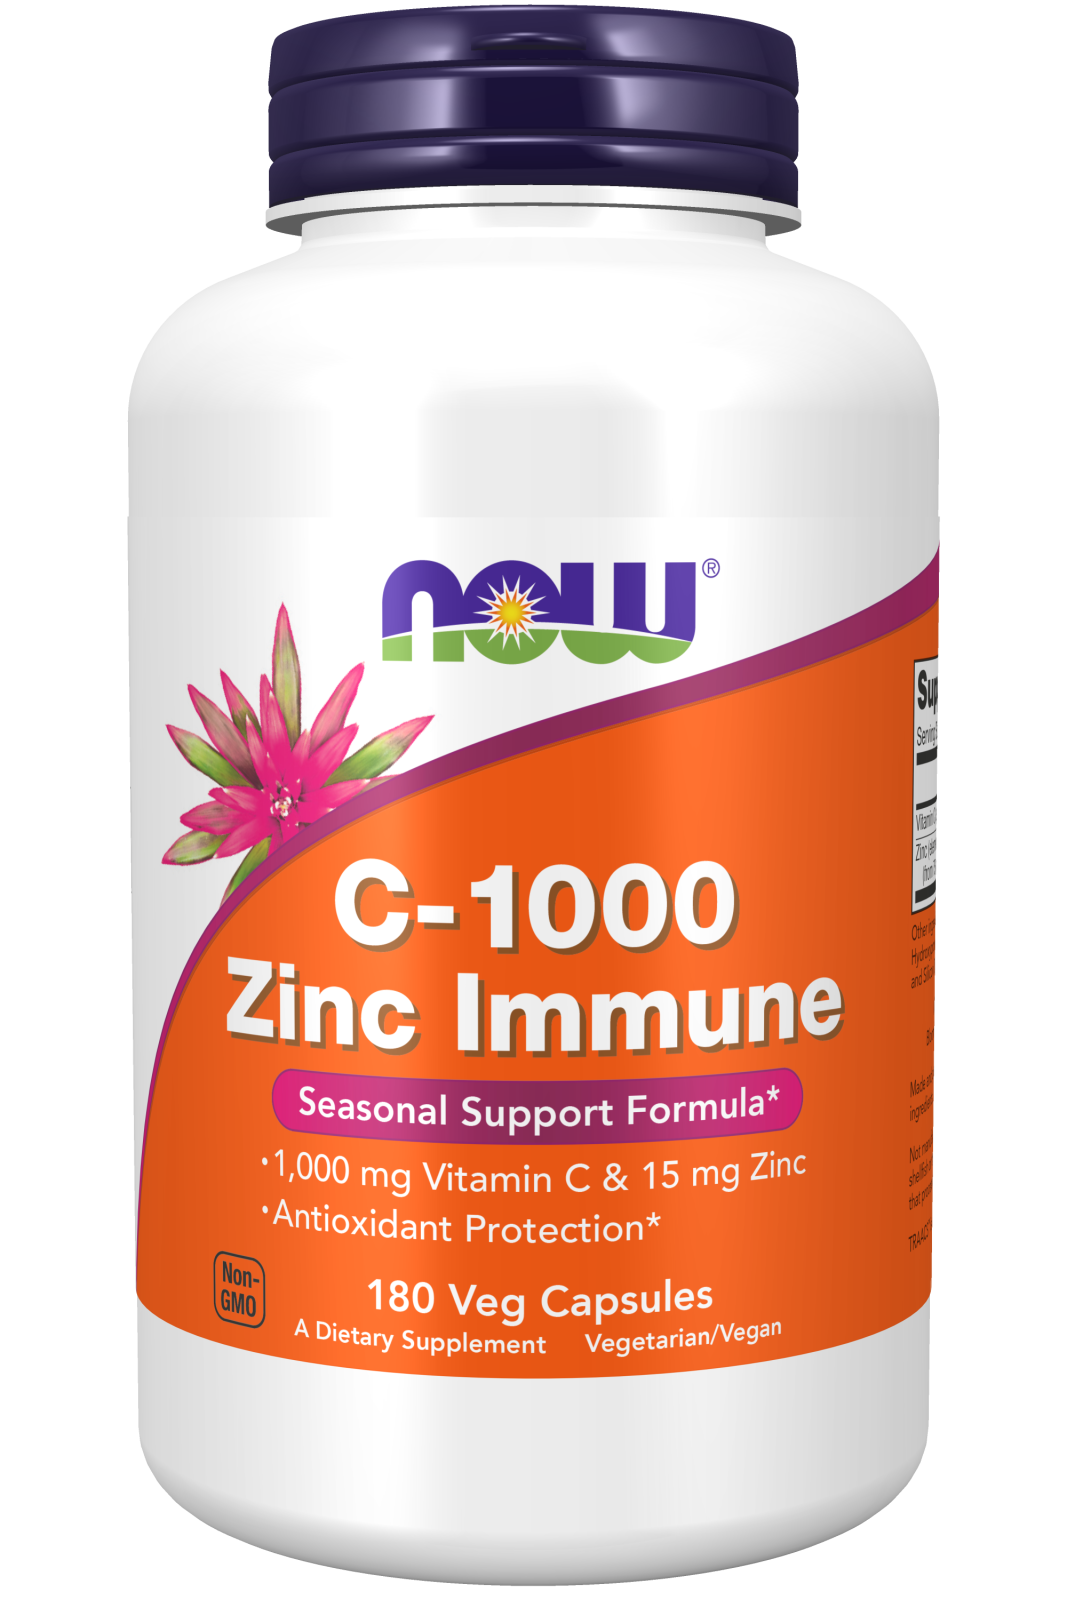 C-1000 Zinc Immune 180 Veg Capsules